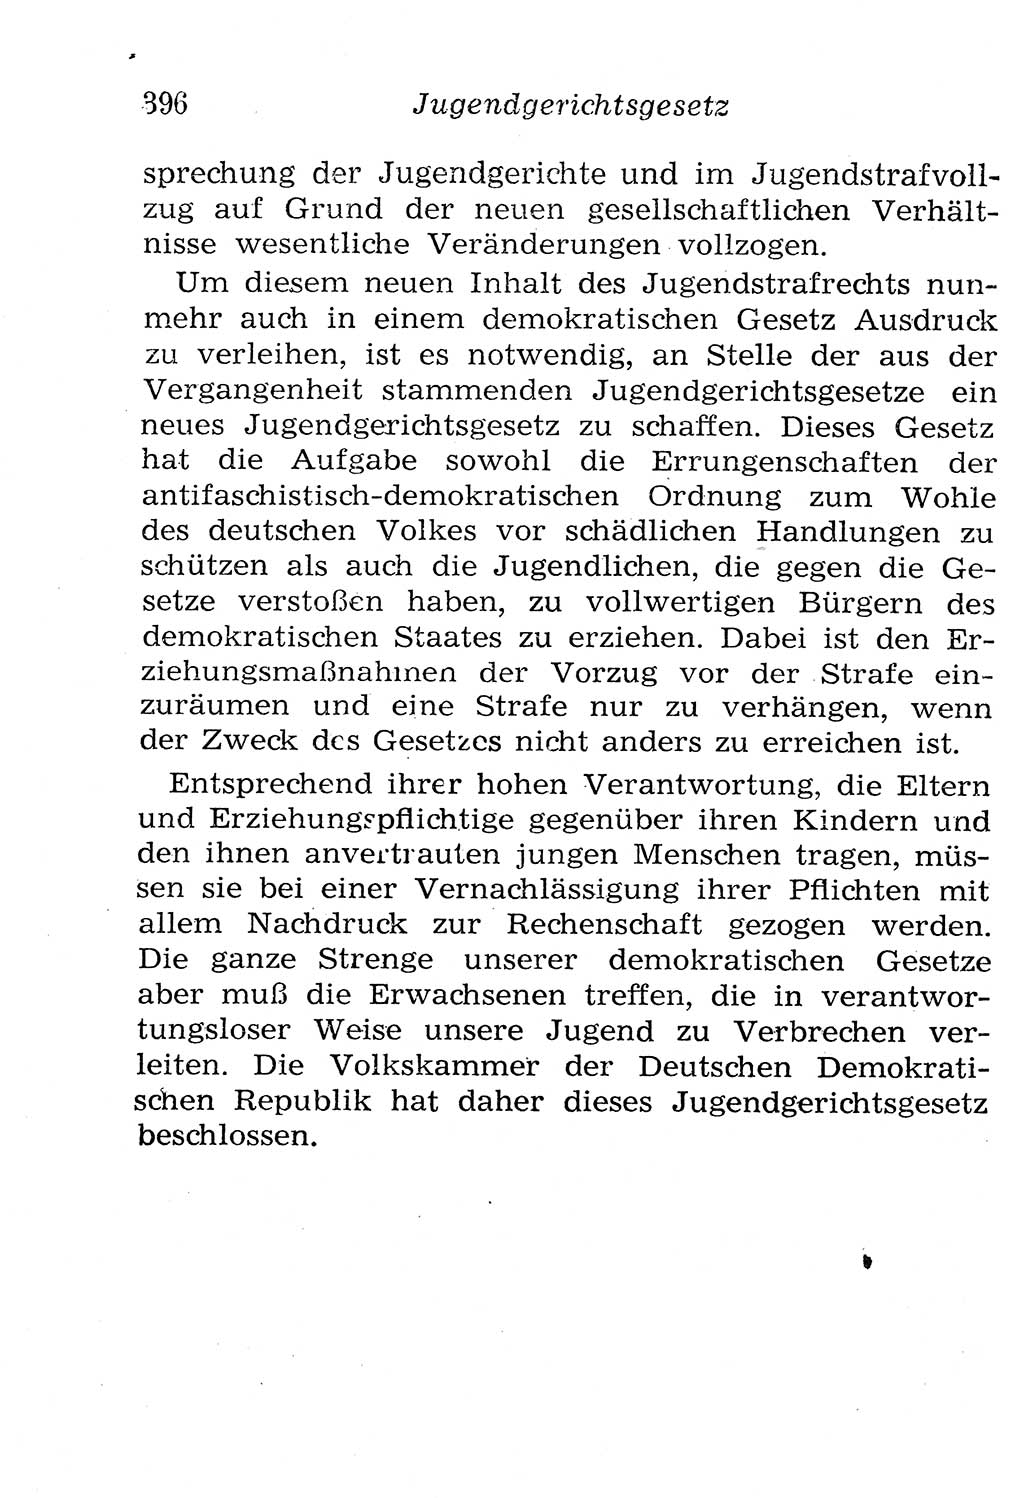 Strafgesetzbuch (StGB) und andere Strafgesetze [Deutsche Demokratische Republik (DDR)] 1958, Seite 396 (StGB Strafges. DDR 1958, S. 396)